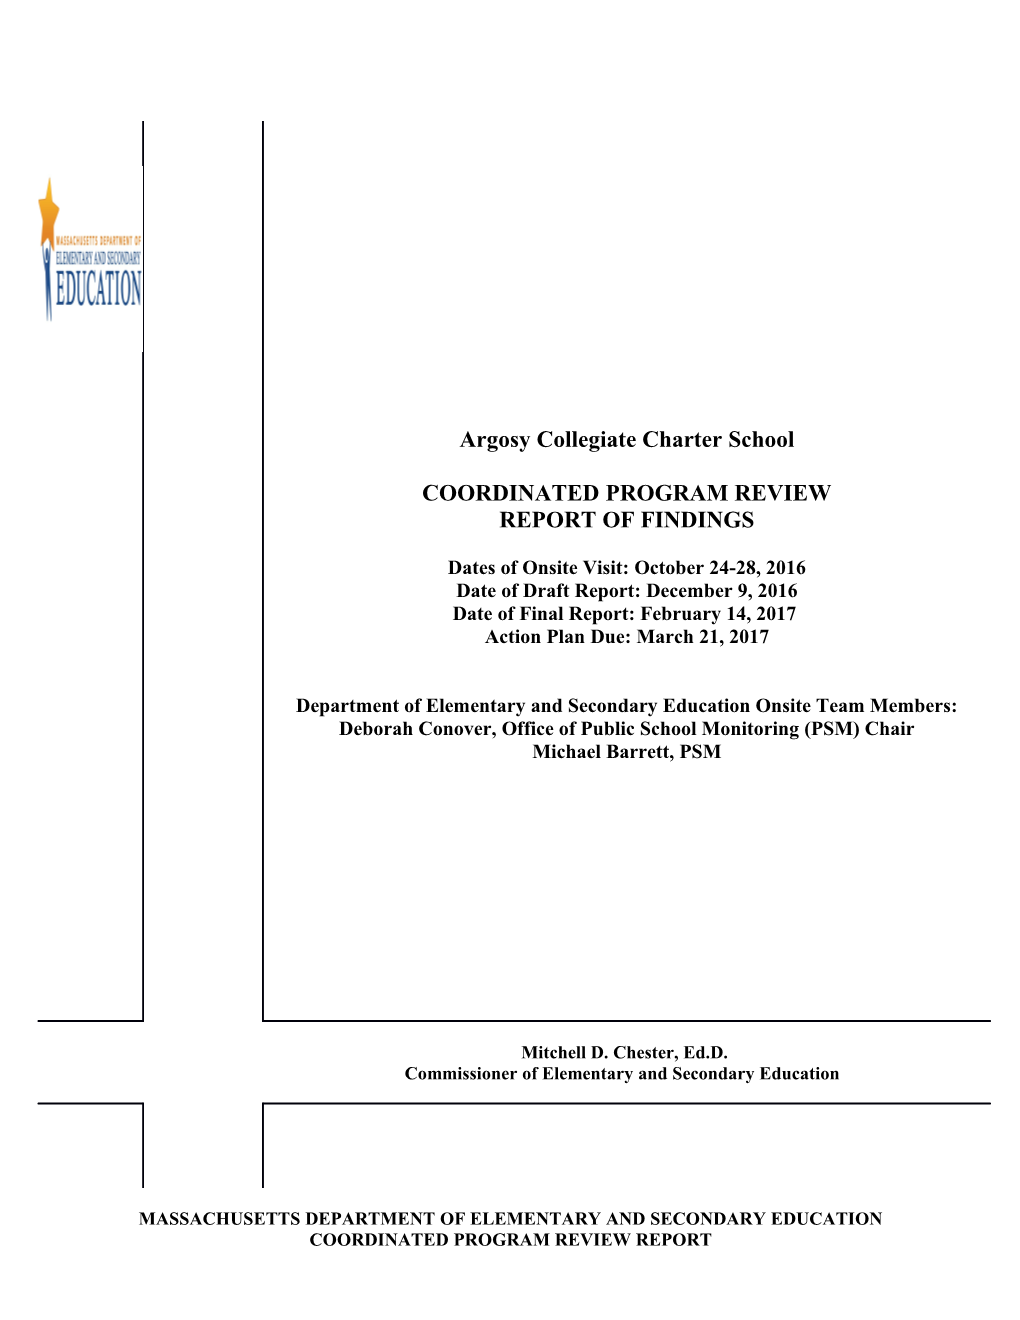 Argosy Collegiate Charter School CPR Final Report 2017